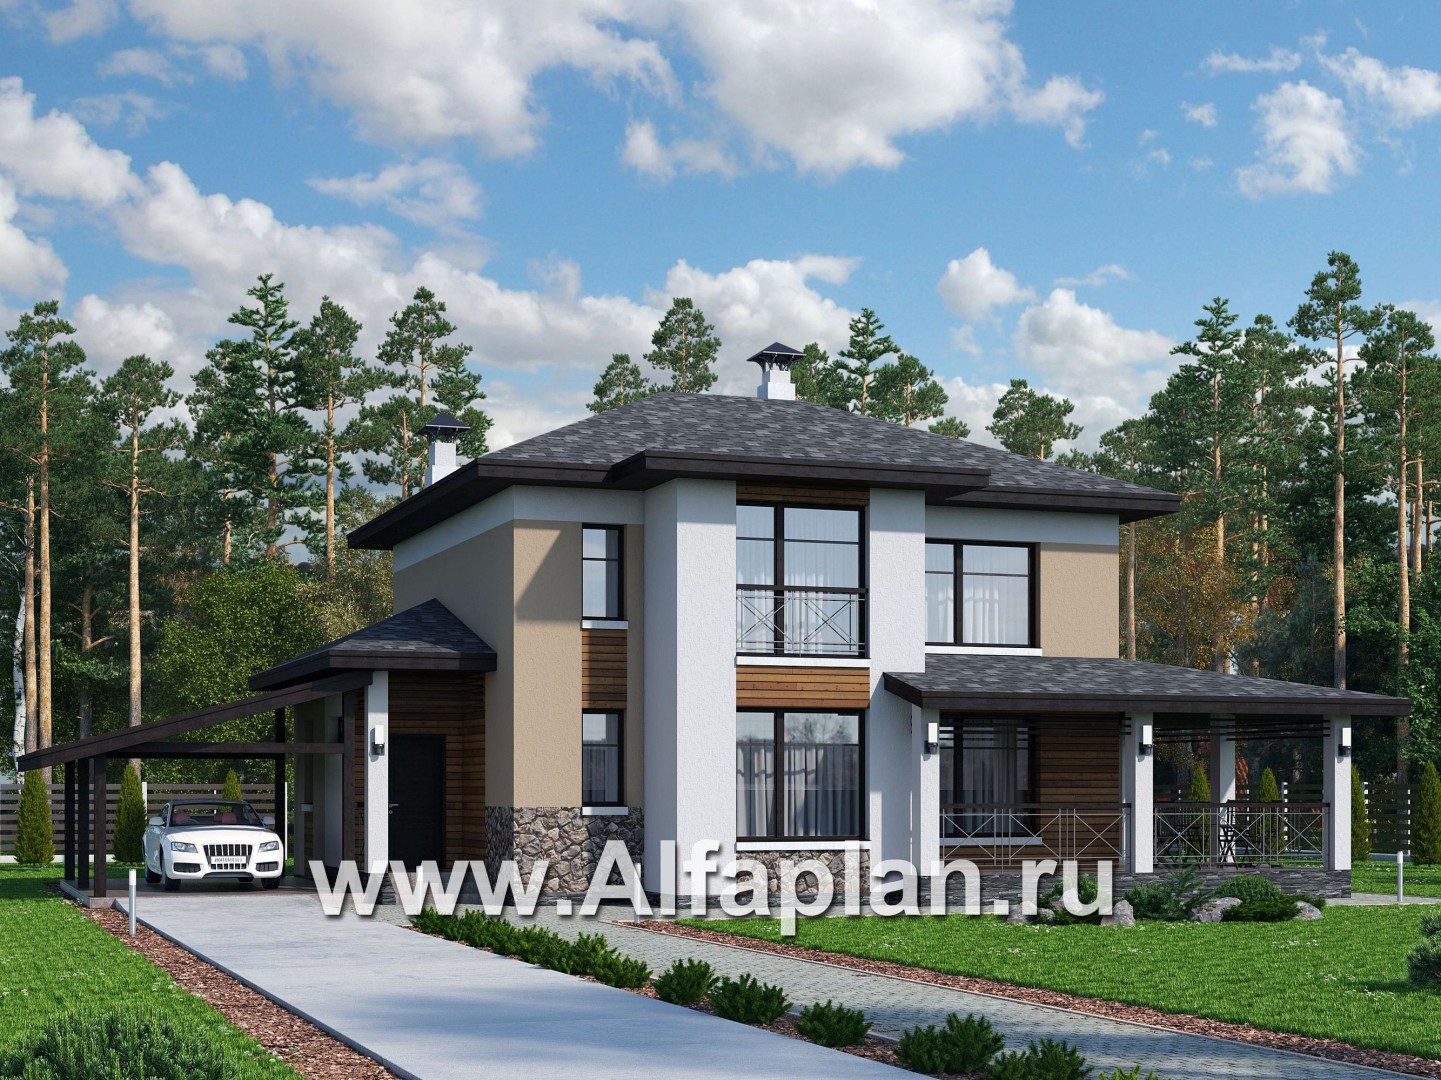 Проекты домов Альфаплан - «Стимул» - проект двухэтажного дома с угловой террасой, планировка с кабинетом на 1 эт, в современном стиле, с навесом на 1 авто - основное изображение